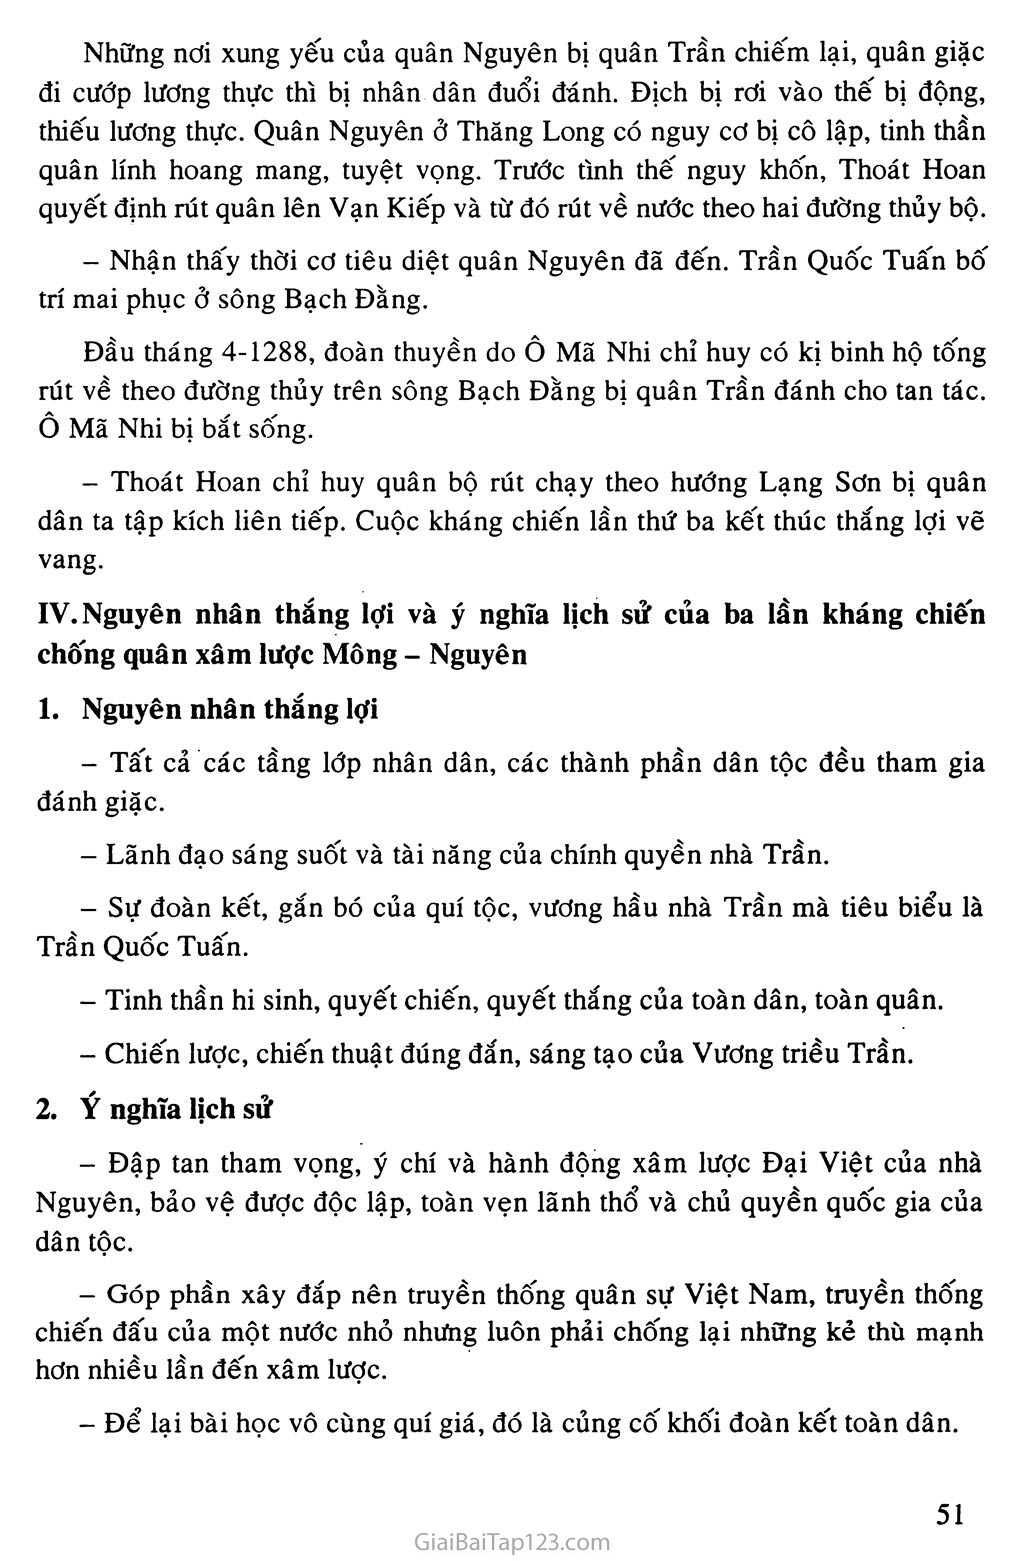 Bài 14: Ba lần kháng chiến chống quân xâm lược Mông - Nguyên (thế kỉ XIII) trang 5